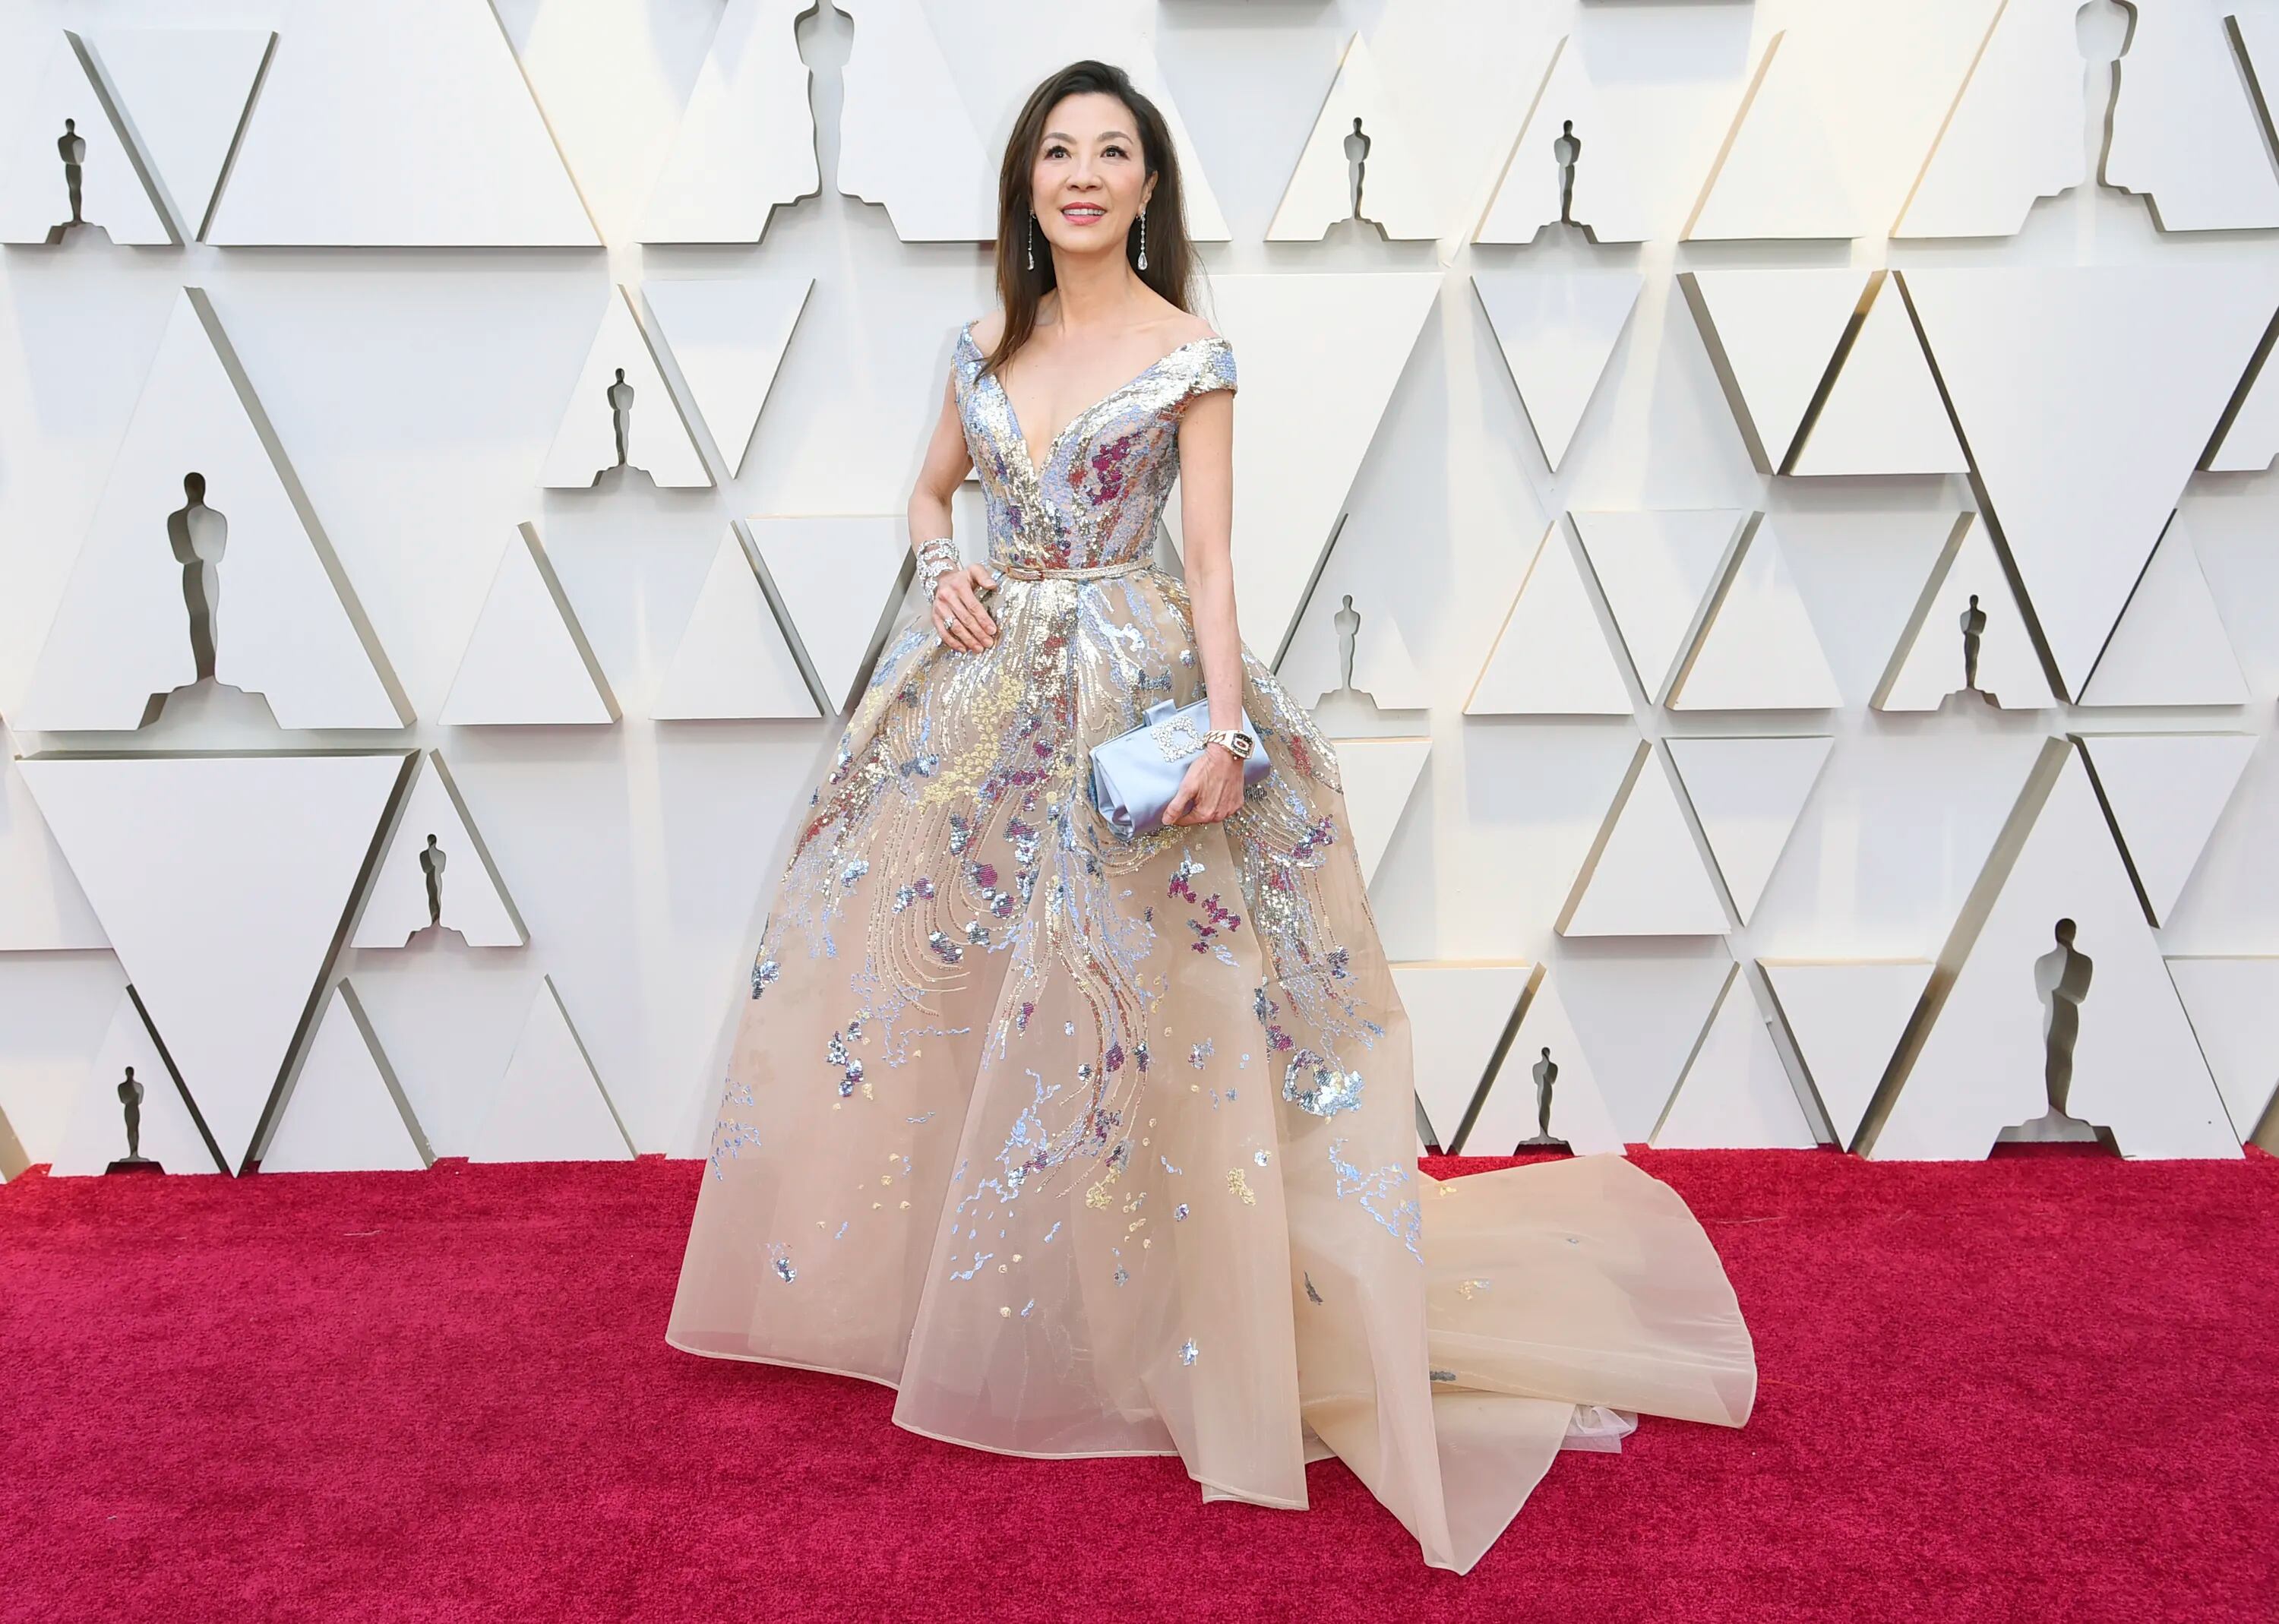 Regina King Wears White Oscar de la Renta Dress on Oscars 2019 Red Carpet